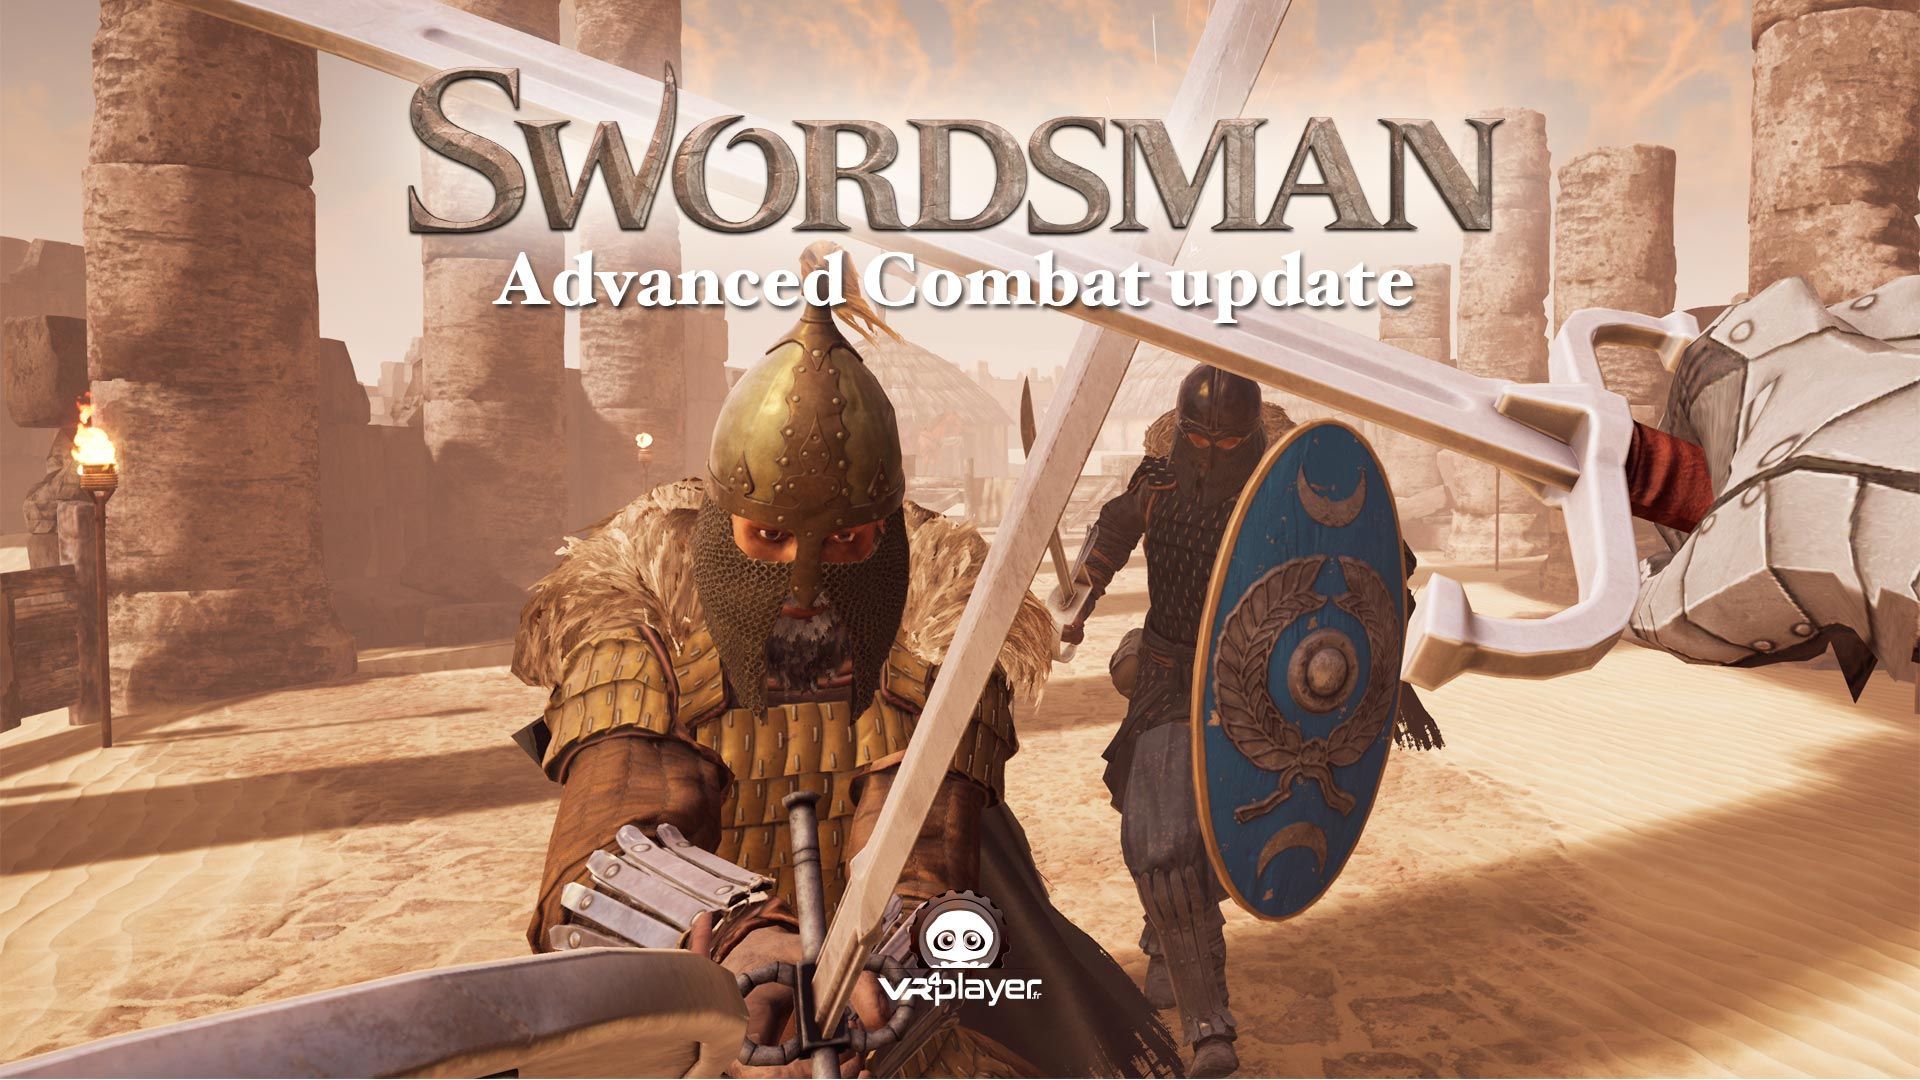 Swordsman VR : Une mise à jour des combats avancés dispo sur PSVR !